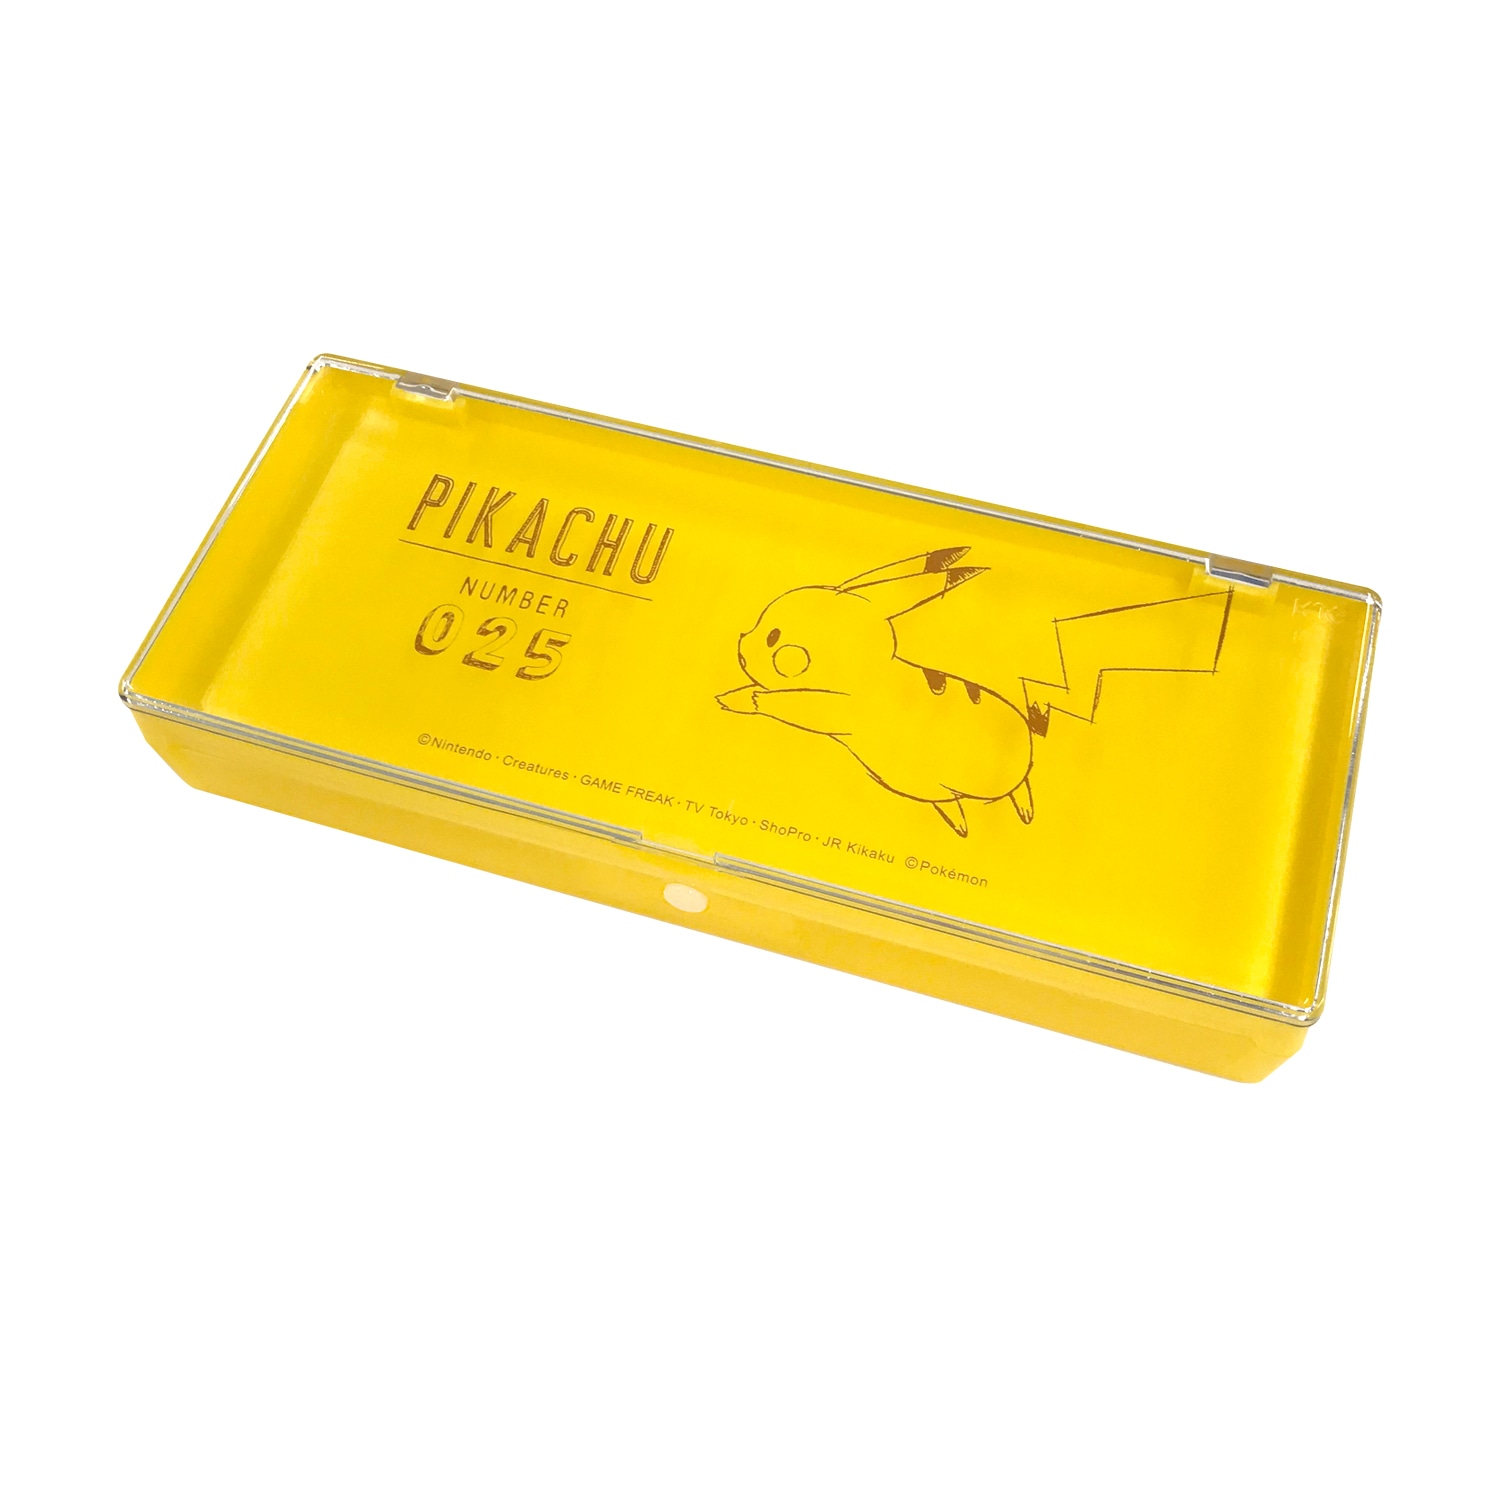 プラコレ「Pikachu number025」ピカチュウ_イエロー : ポケモンセンターオンライン